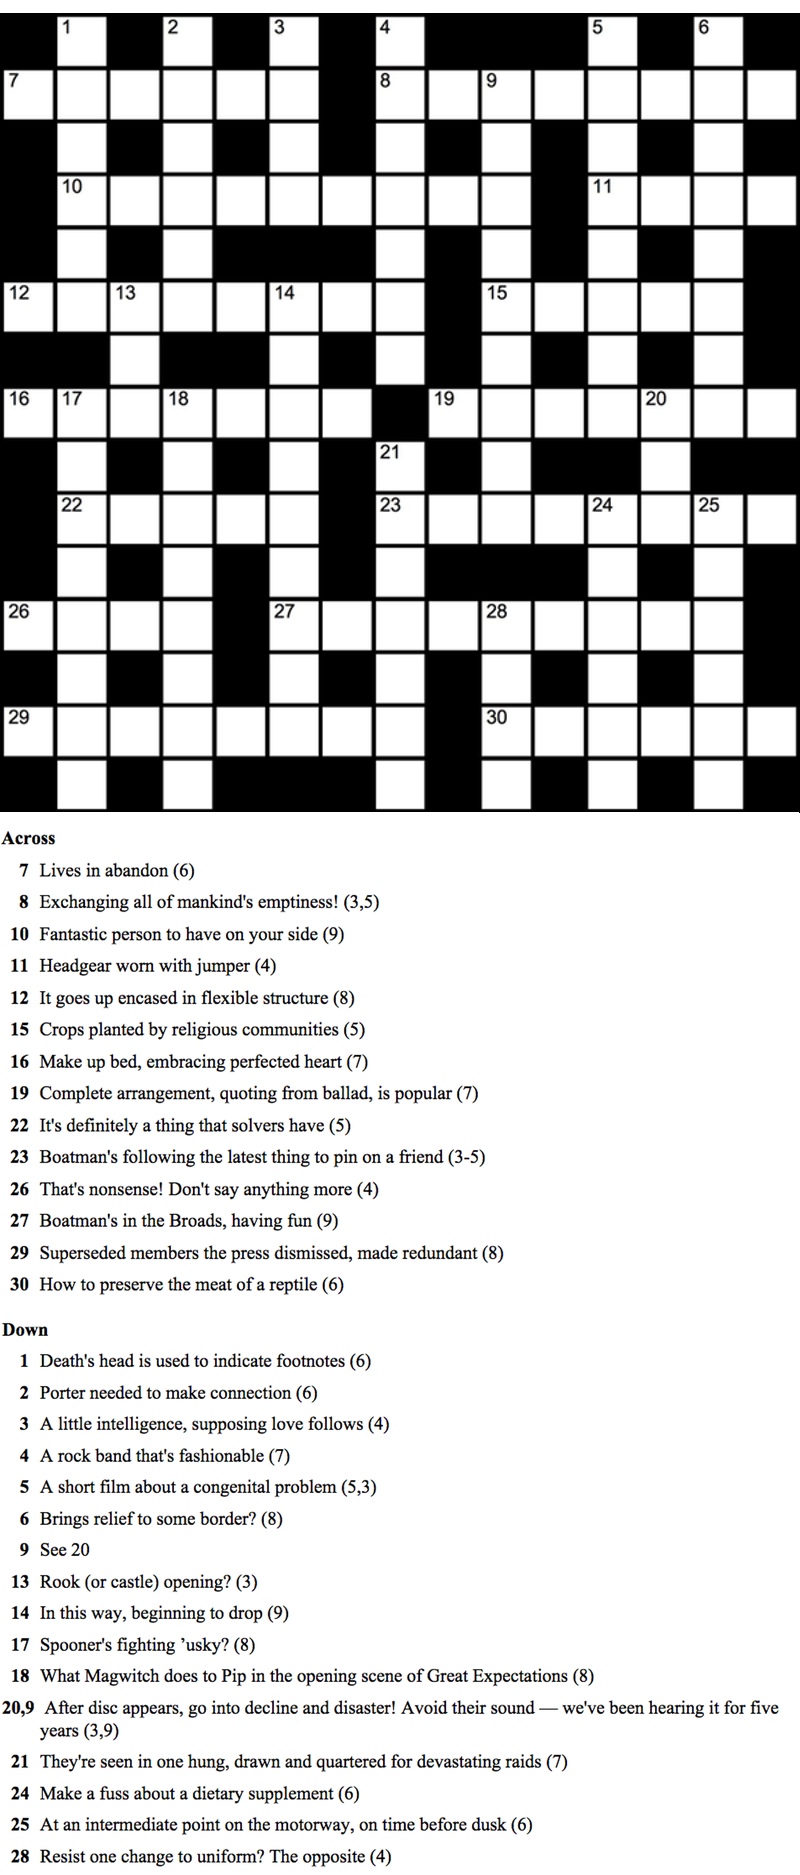 nexus crossword solver